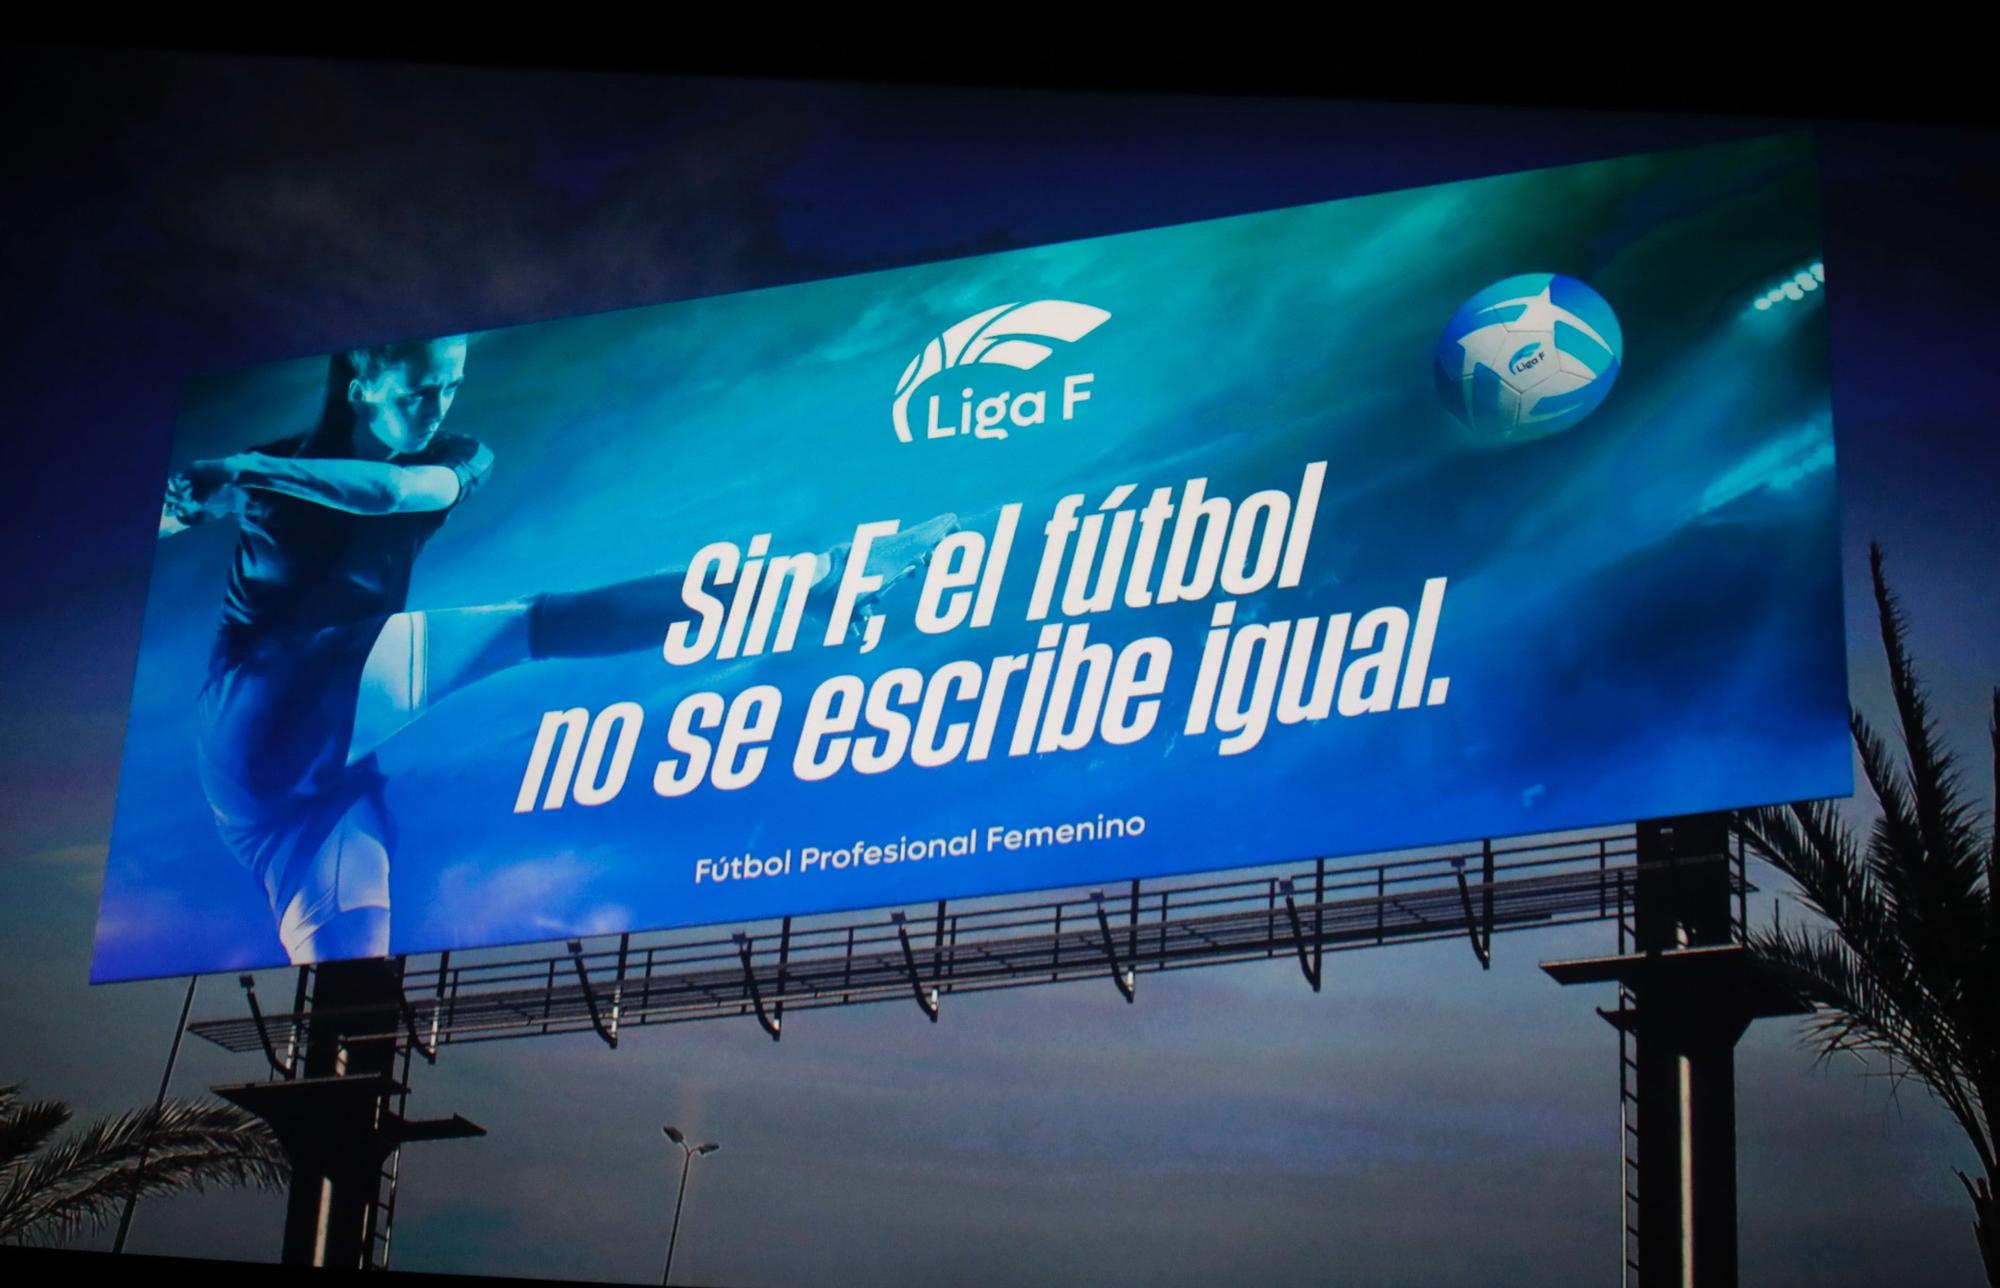 Presentación oficial de la nueva identidad de marca de la Liga Profesional de Fútbol Femenino.